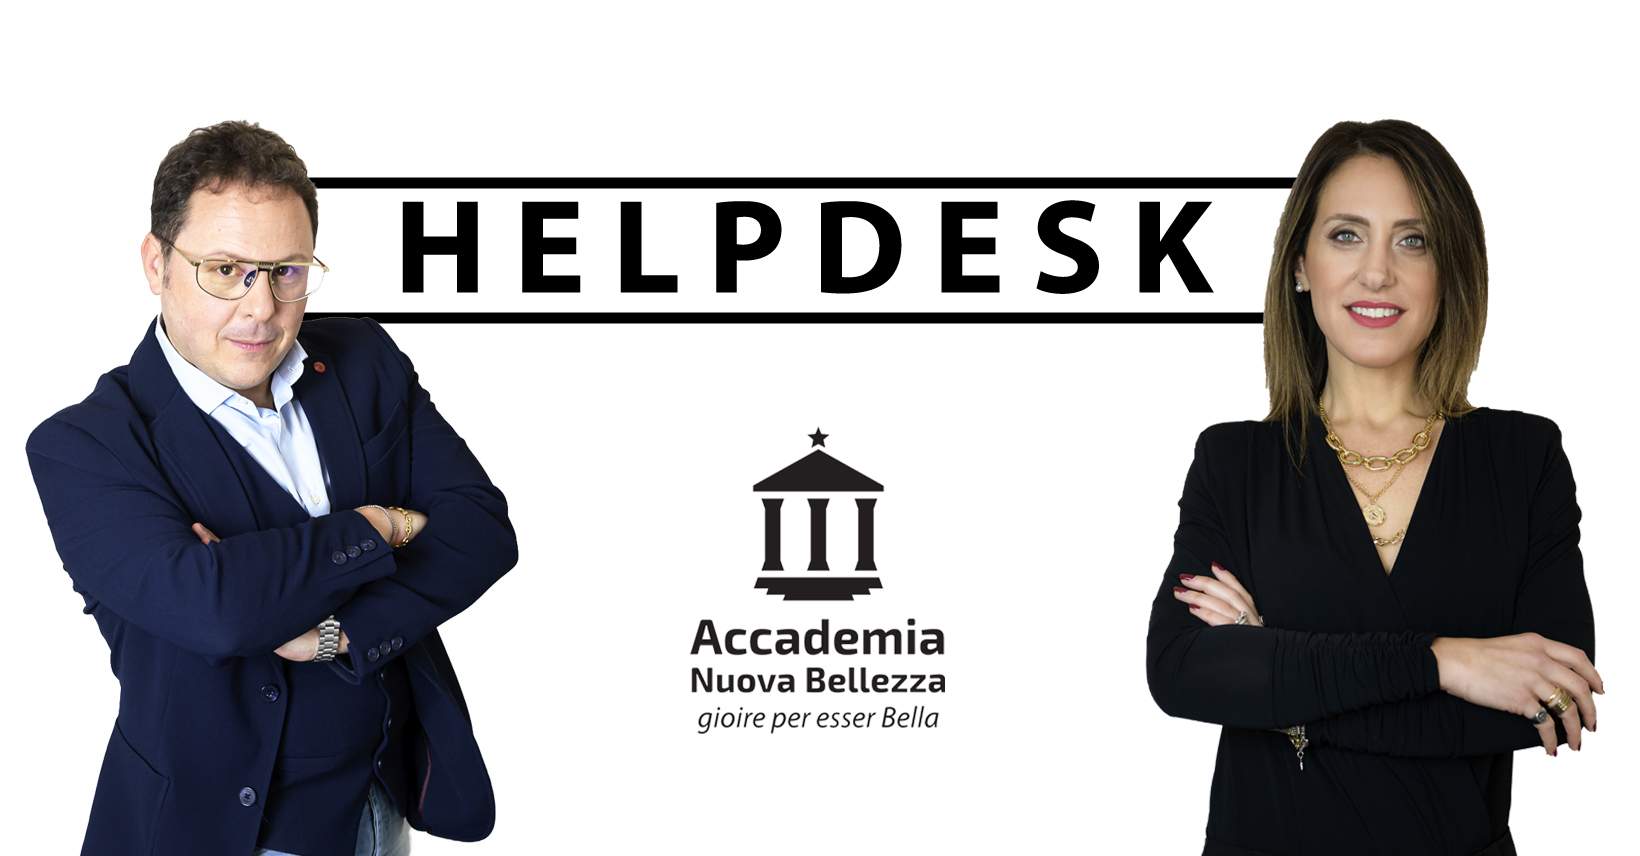 Helpdesk - Accademia Nuova Bellezza